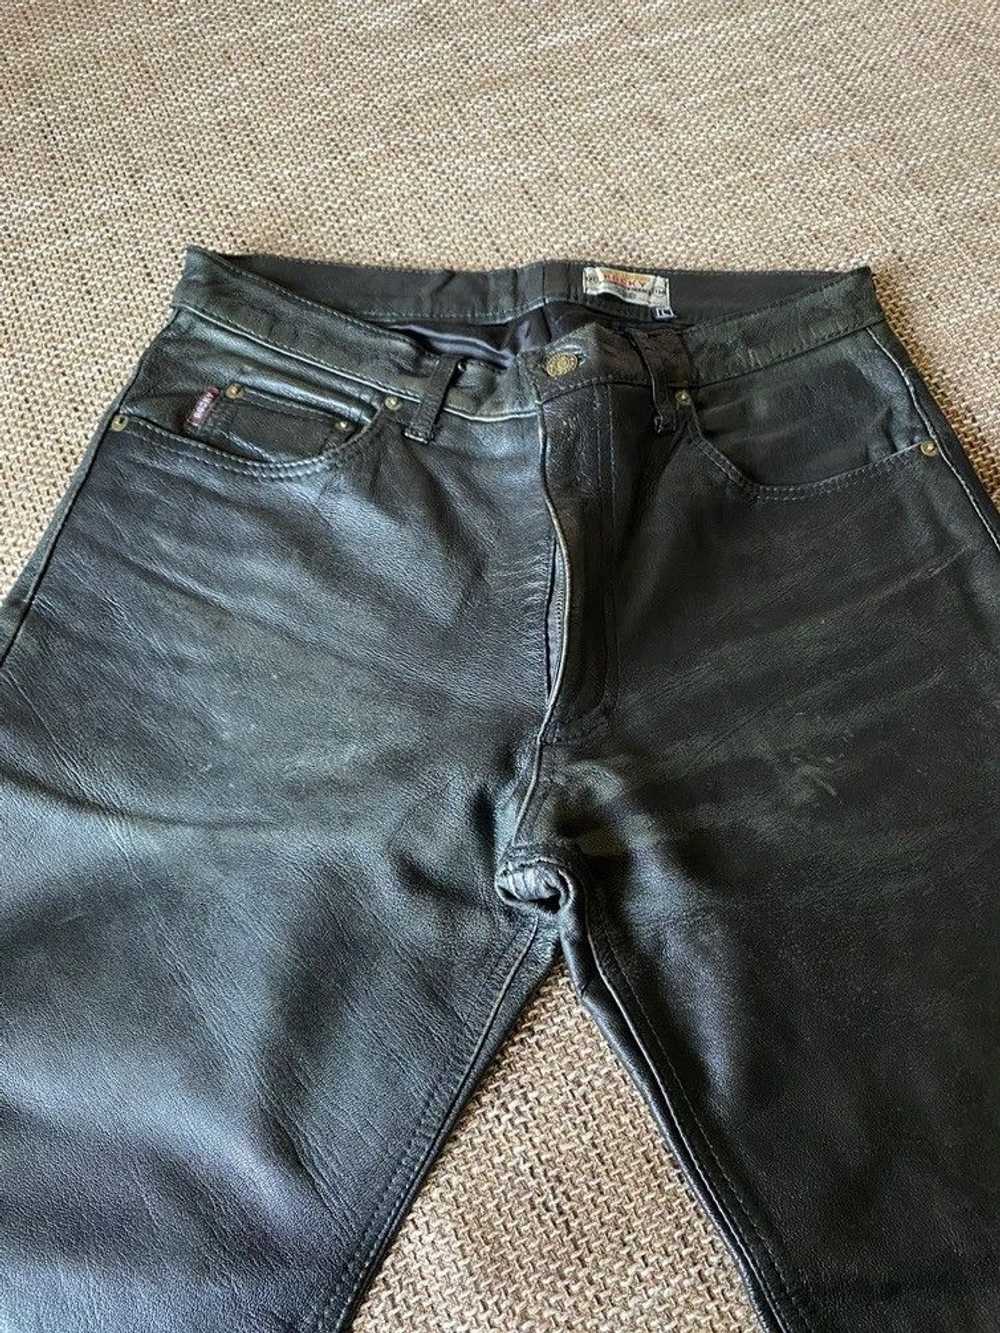 Genuine Leather × Leather × Vintage Vintage leath… - image 11